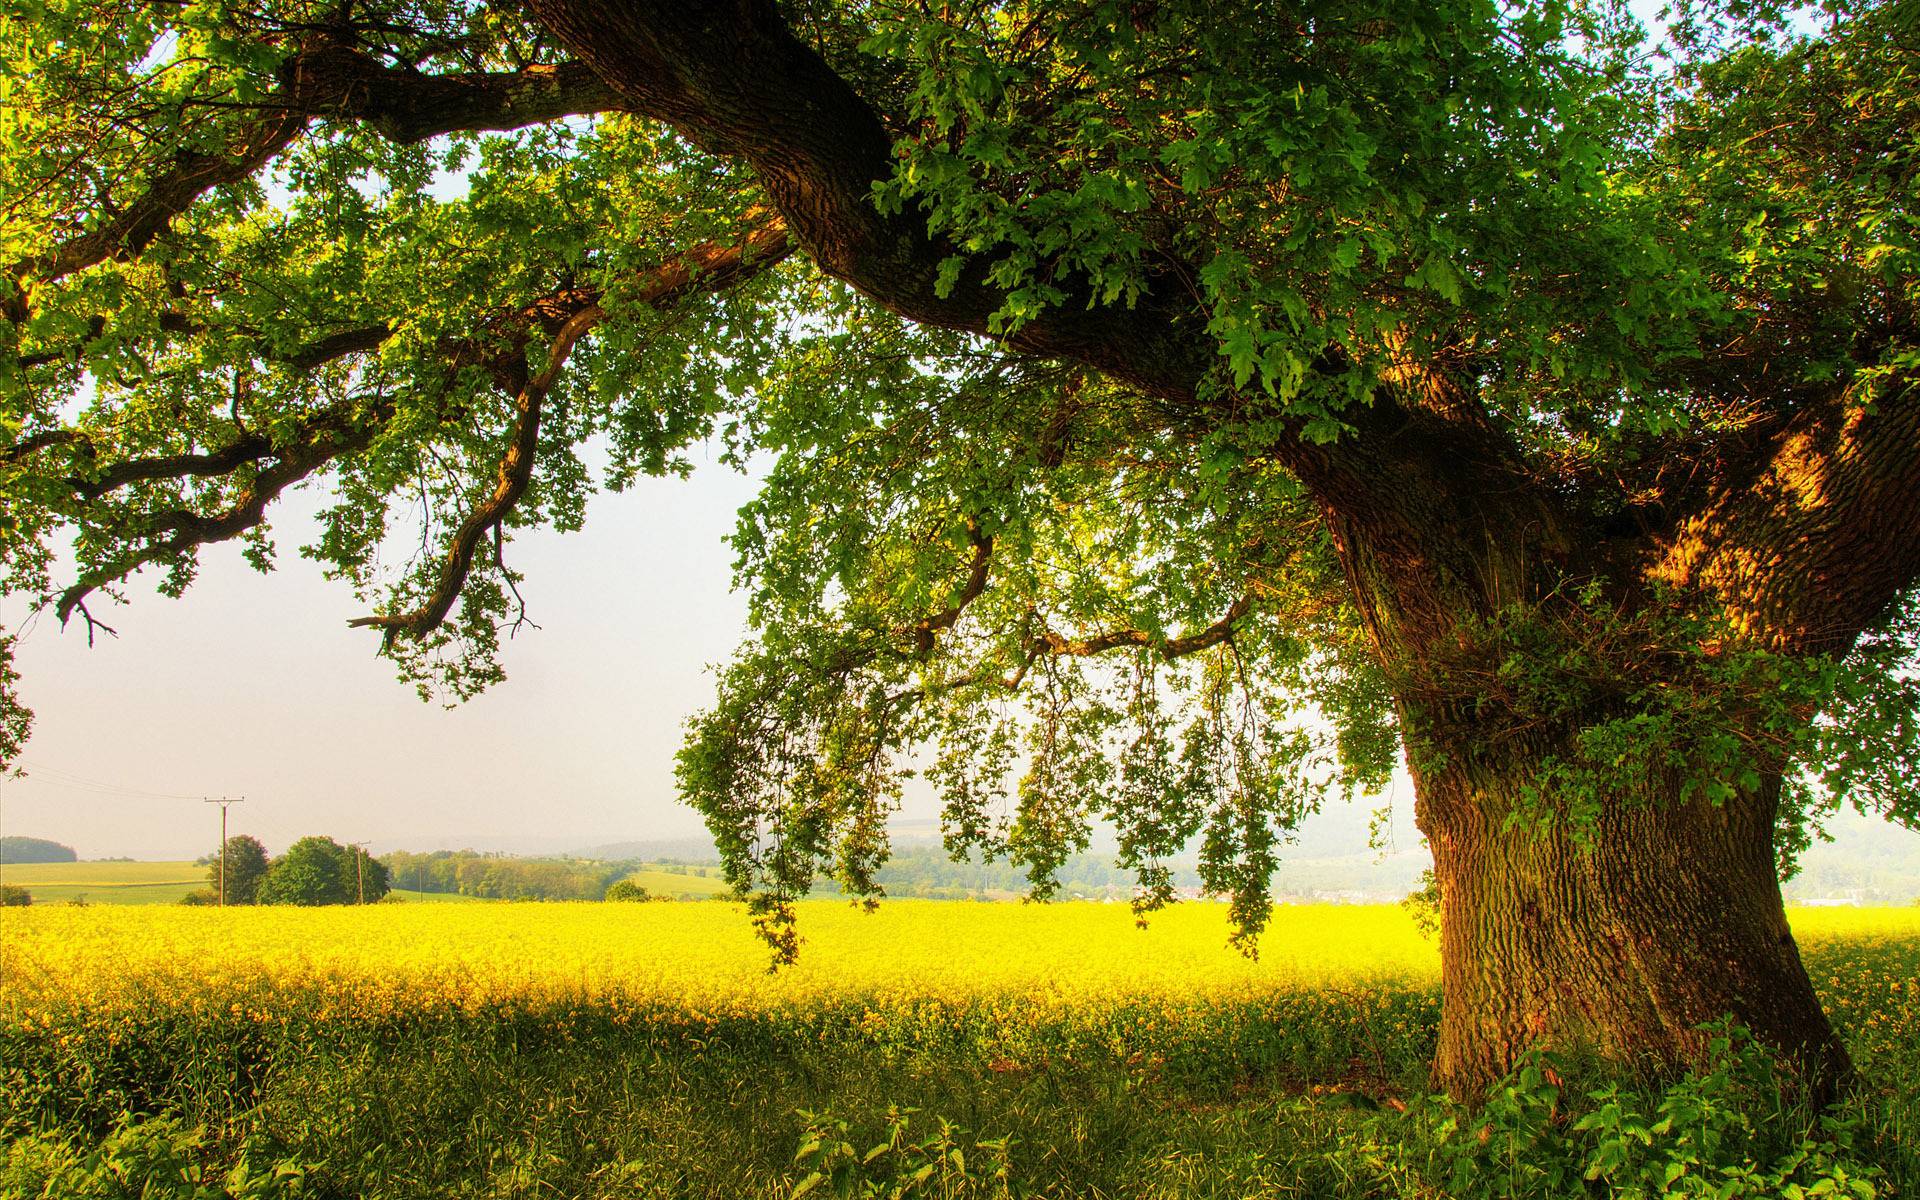 Oak Tree Photo